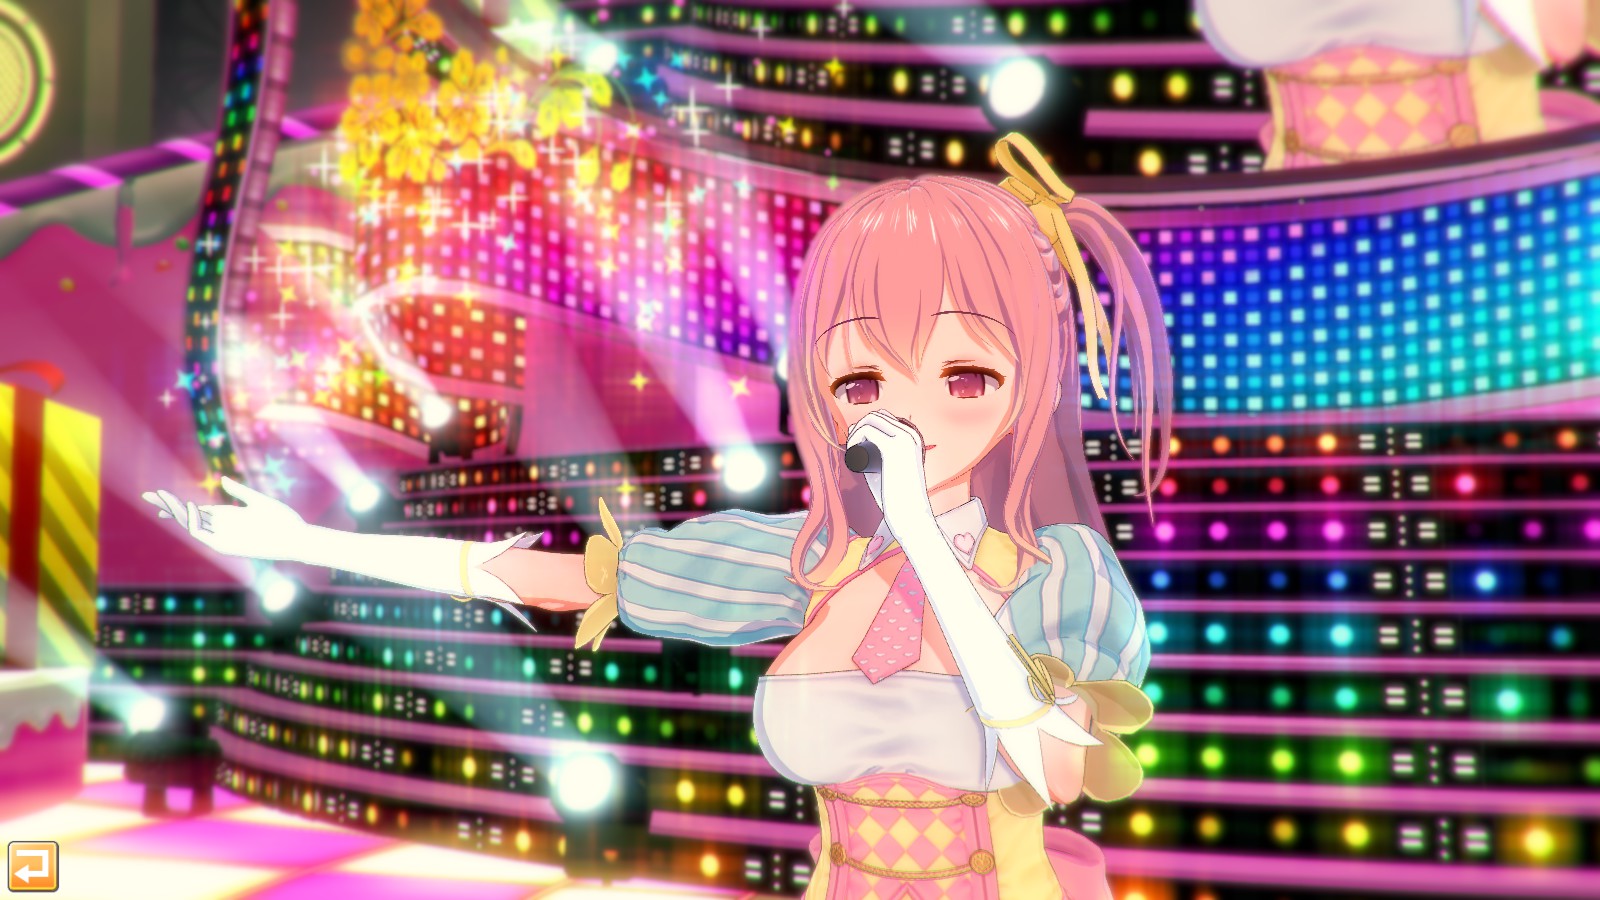 コイカツ / Koikatsu Party Steam Account